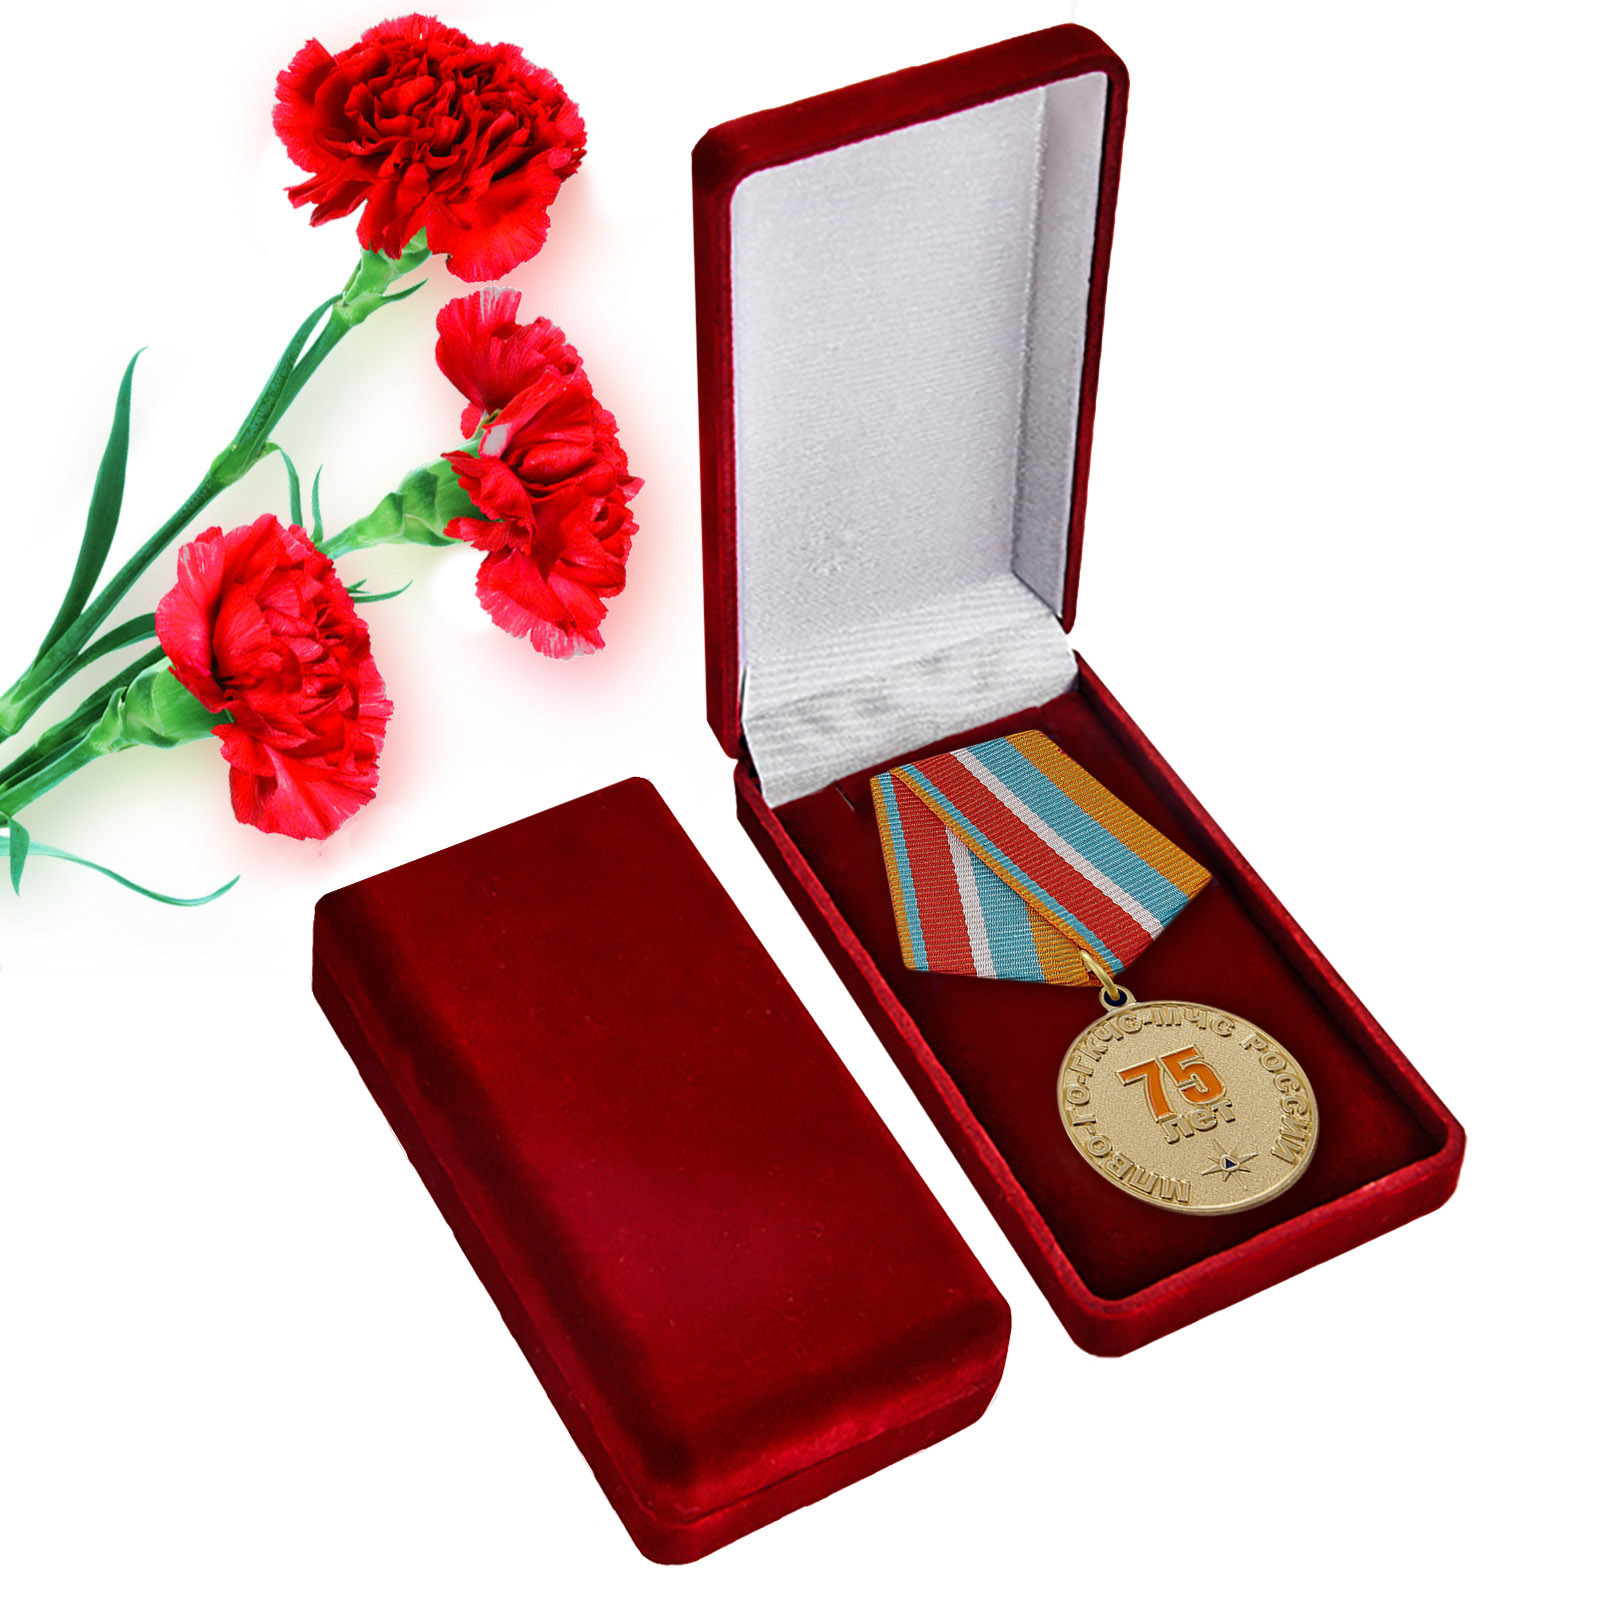 Купить памятную медаль "Гражданской обороне МЧС 75 лет" оптом или в розницу